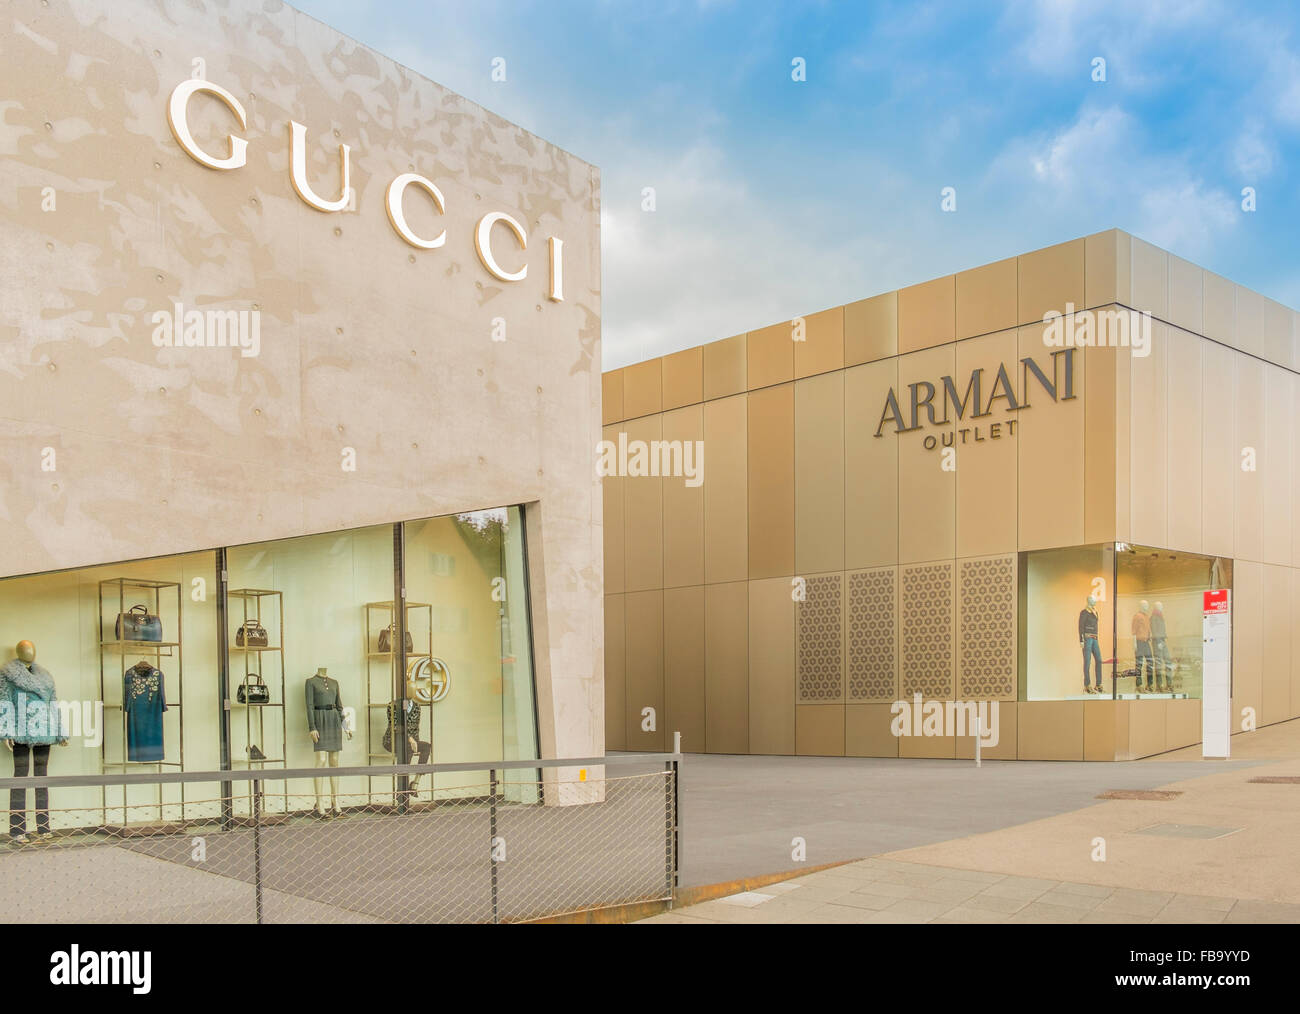 Gucci outlet immagini e fotografie stock ad alta risoluzione - Alamy